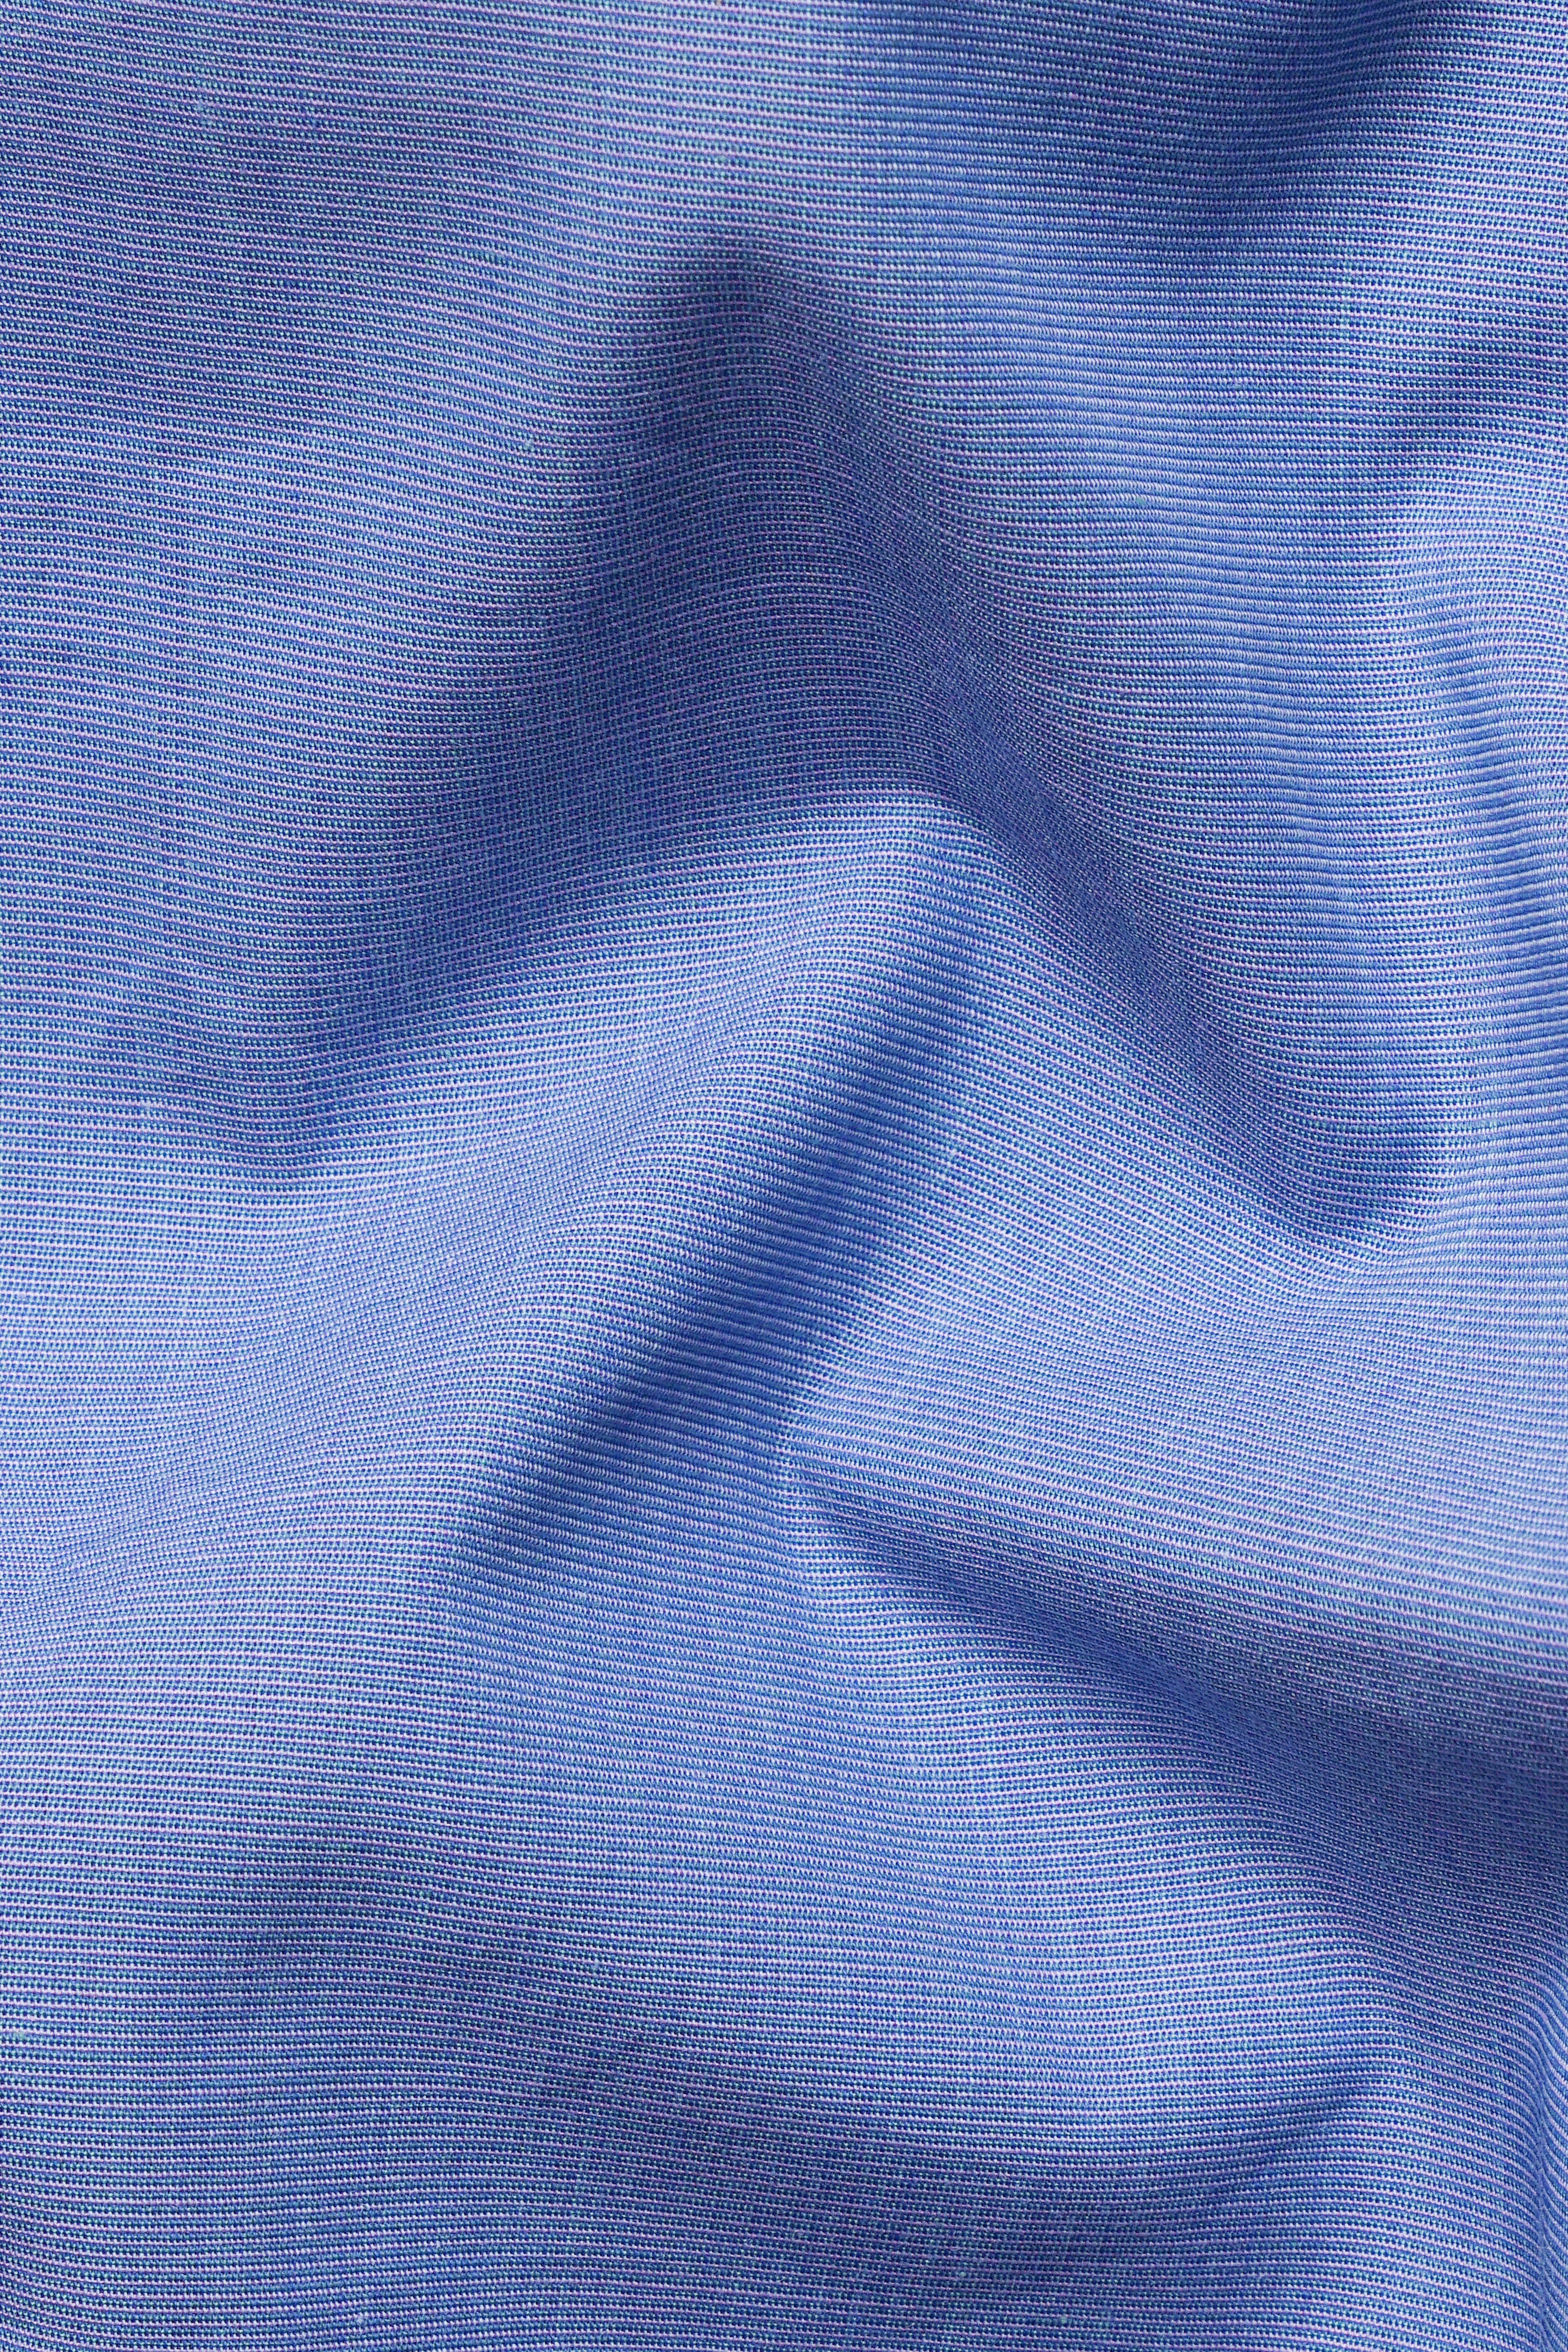 Twilight Blue Two Tone Chambray Textured Premium Cotton Boxer